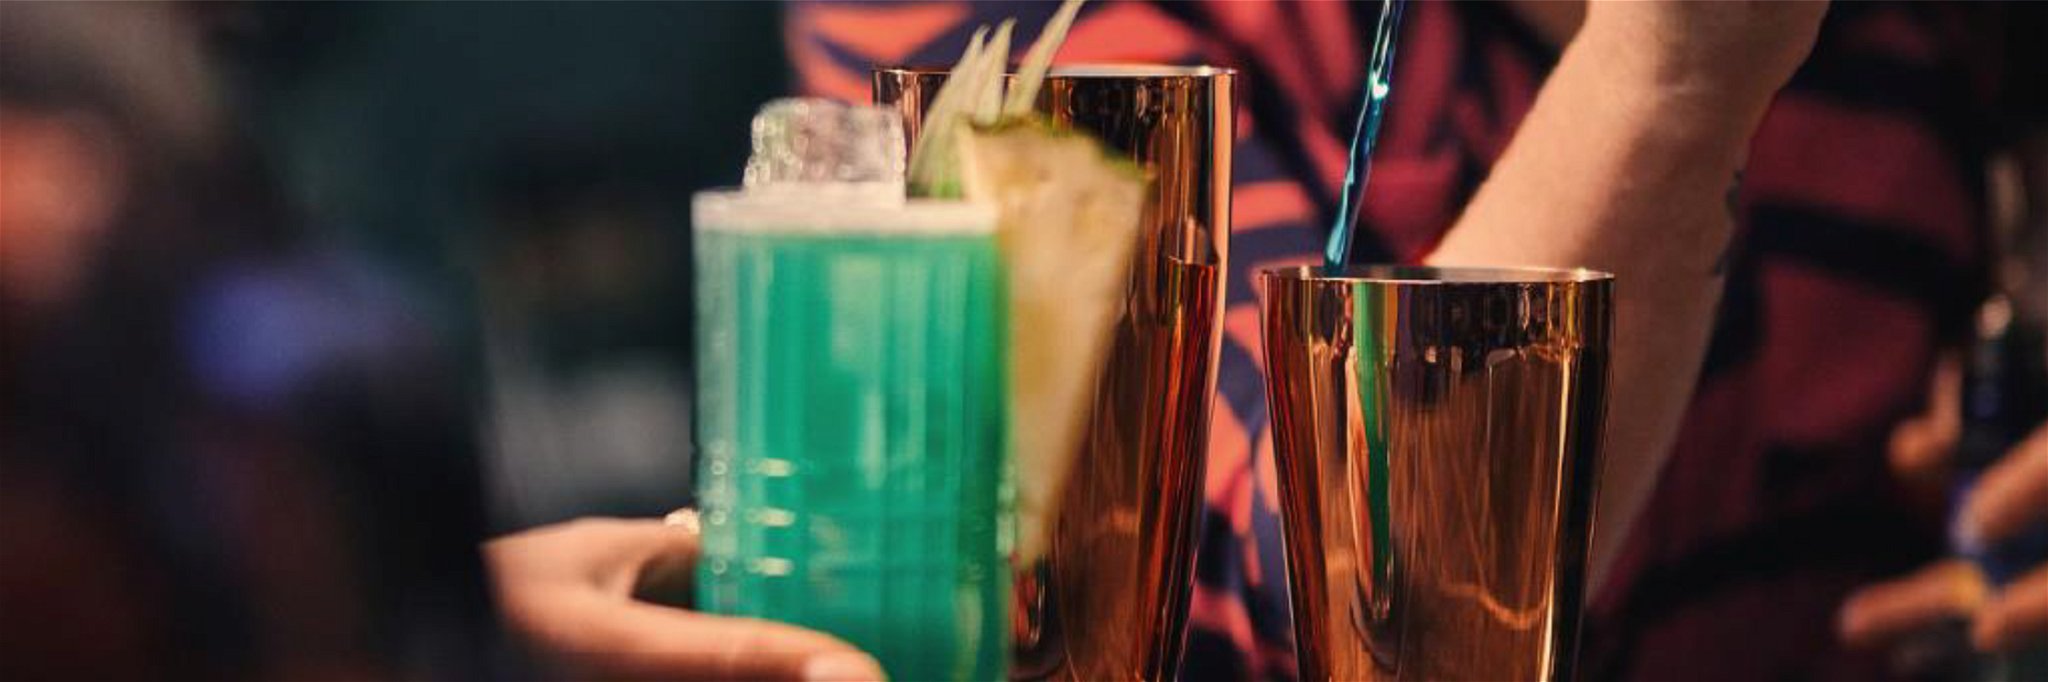 Jetzt gilt es, eine kultige Cocktail Ikone unter dem Motto »BOLS Disco-Cocktail« zu kreieren!